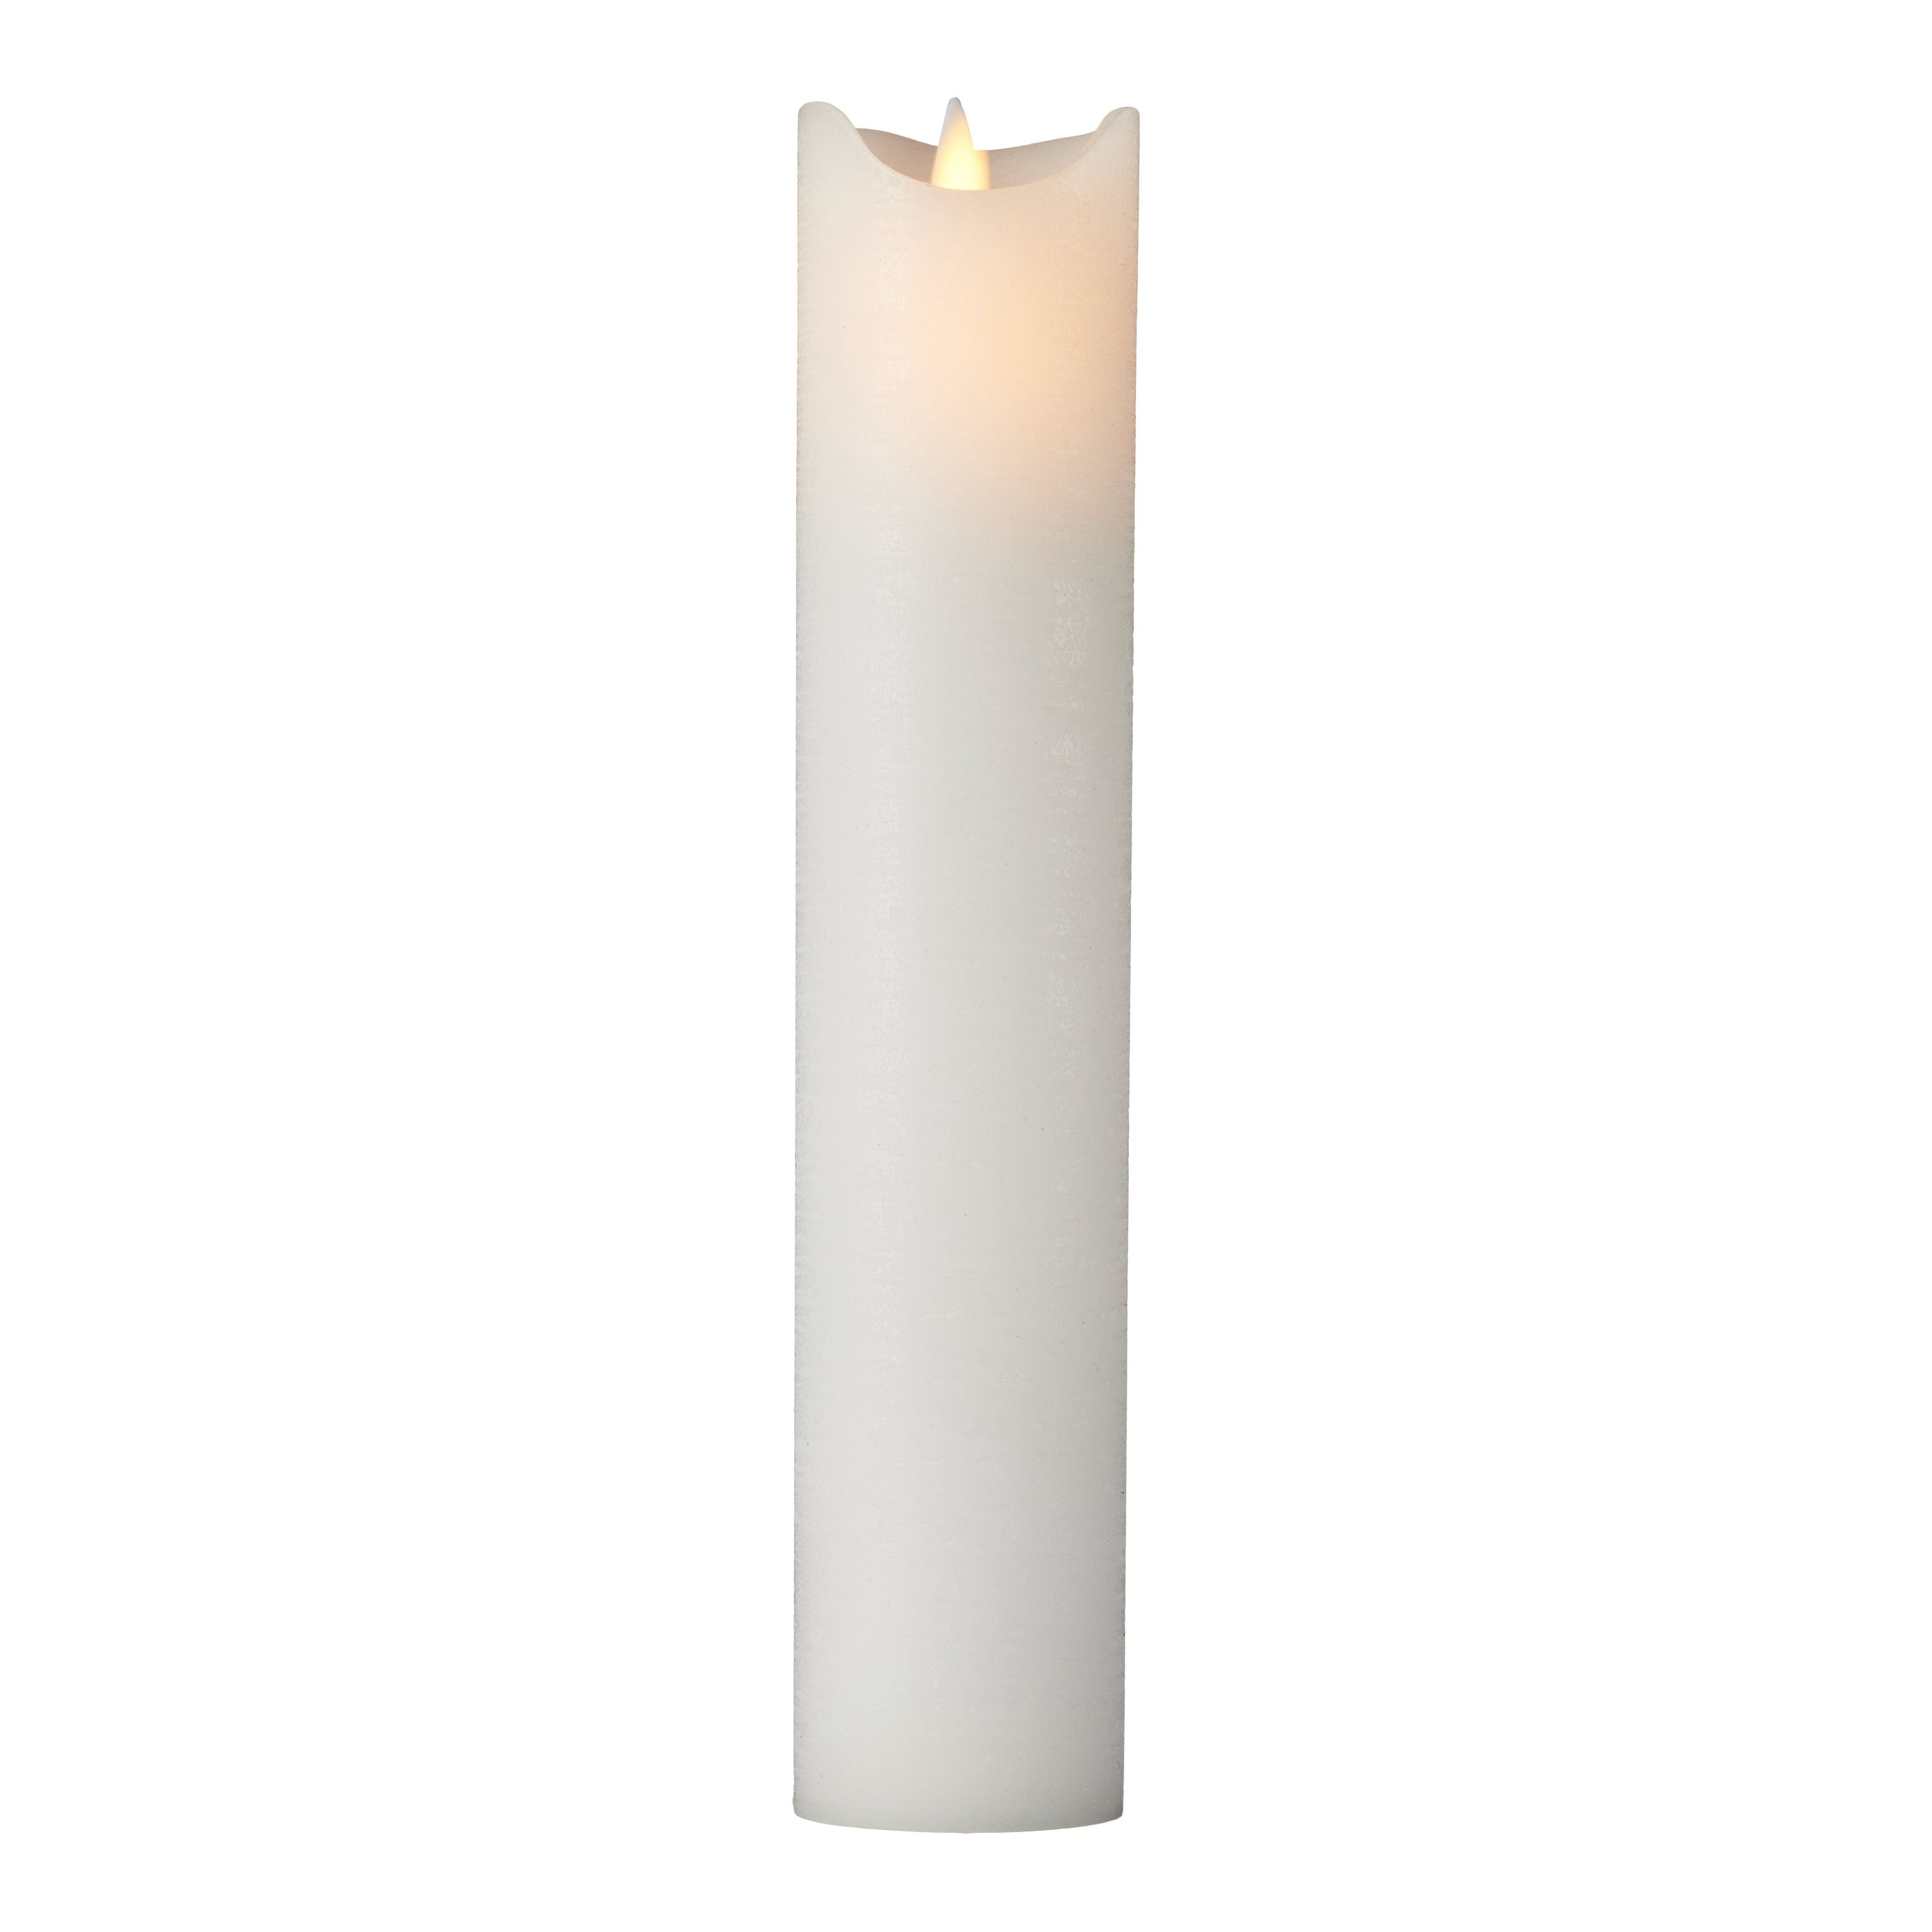 Sirius Sara ladattava LED -kynttilä valkoinen, Ø5x H25cm